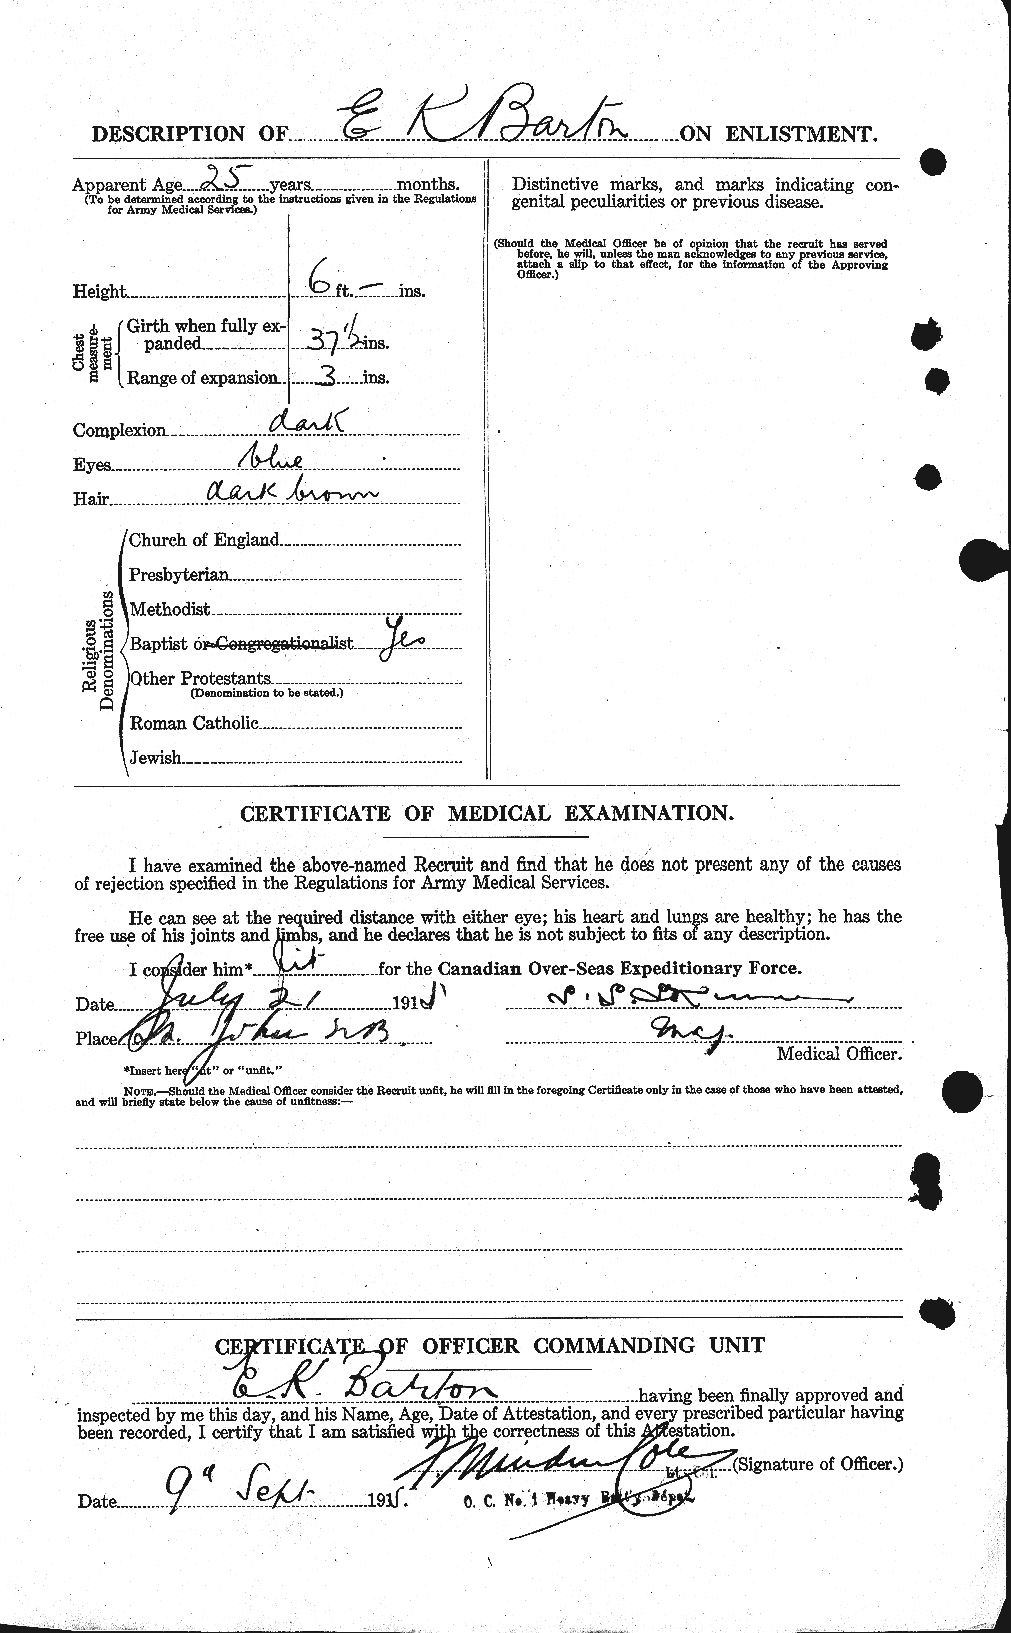 Dossiers du Personnel de la Première Guerre mondiale - CEC 221680b